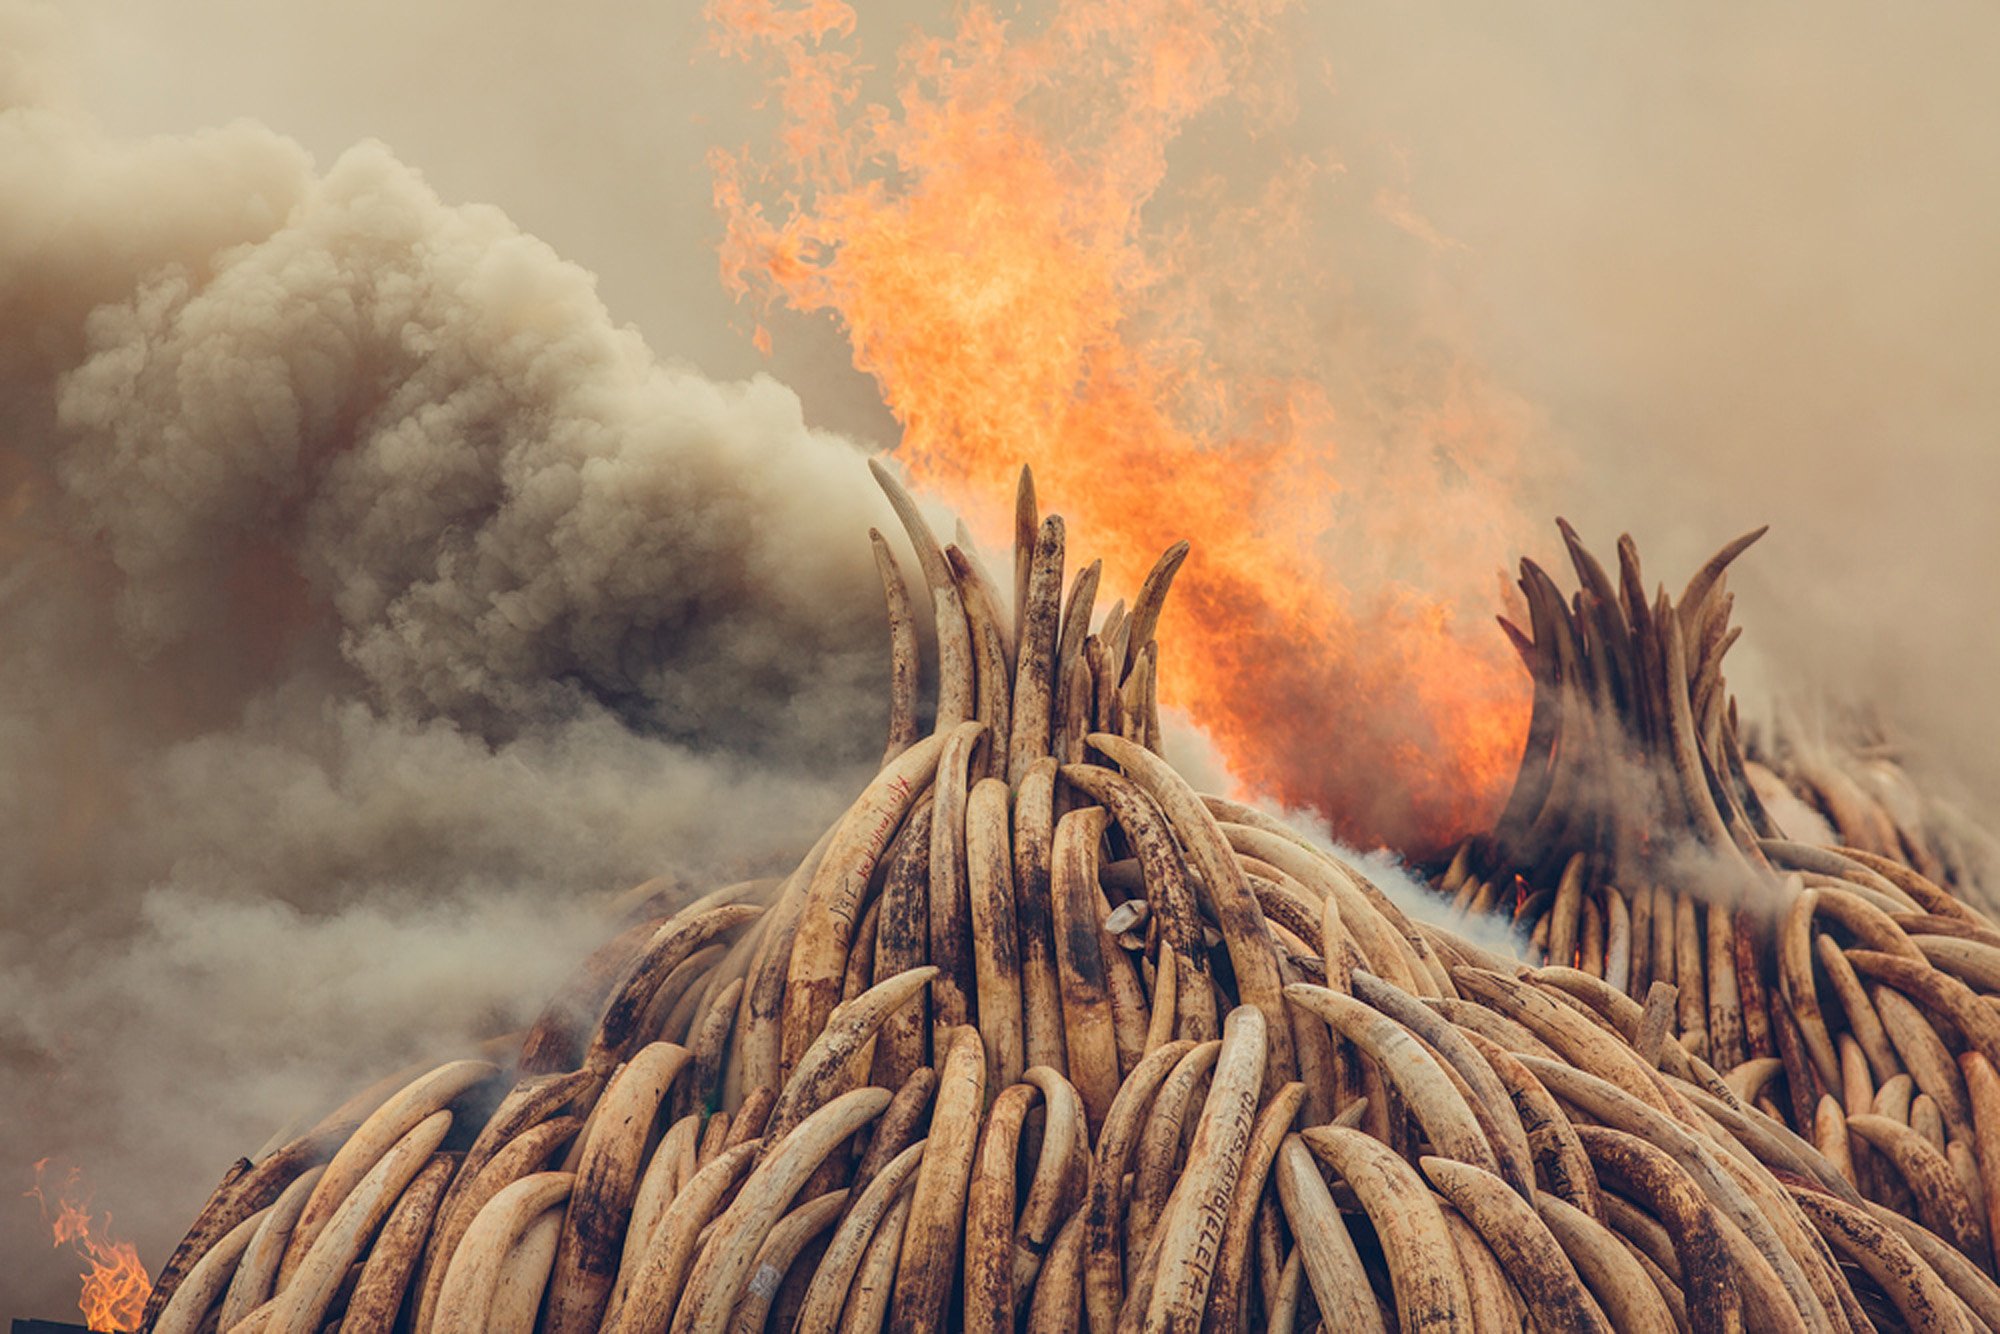 Piles of ivory burning.